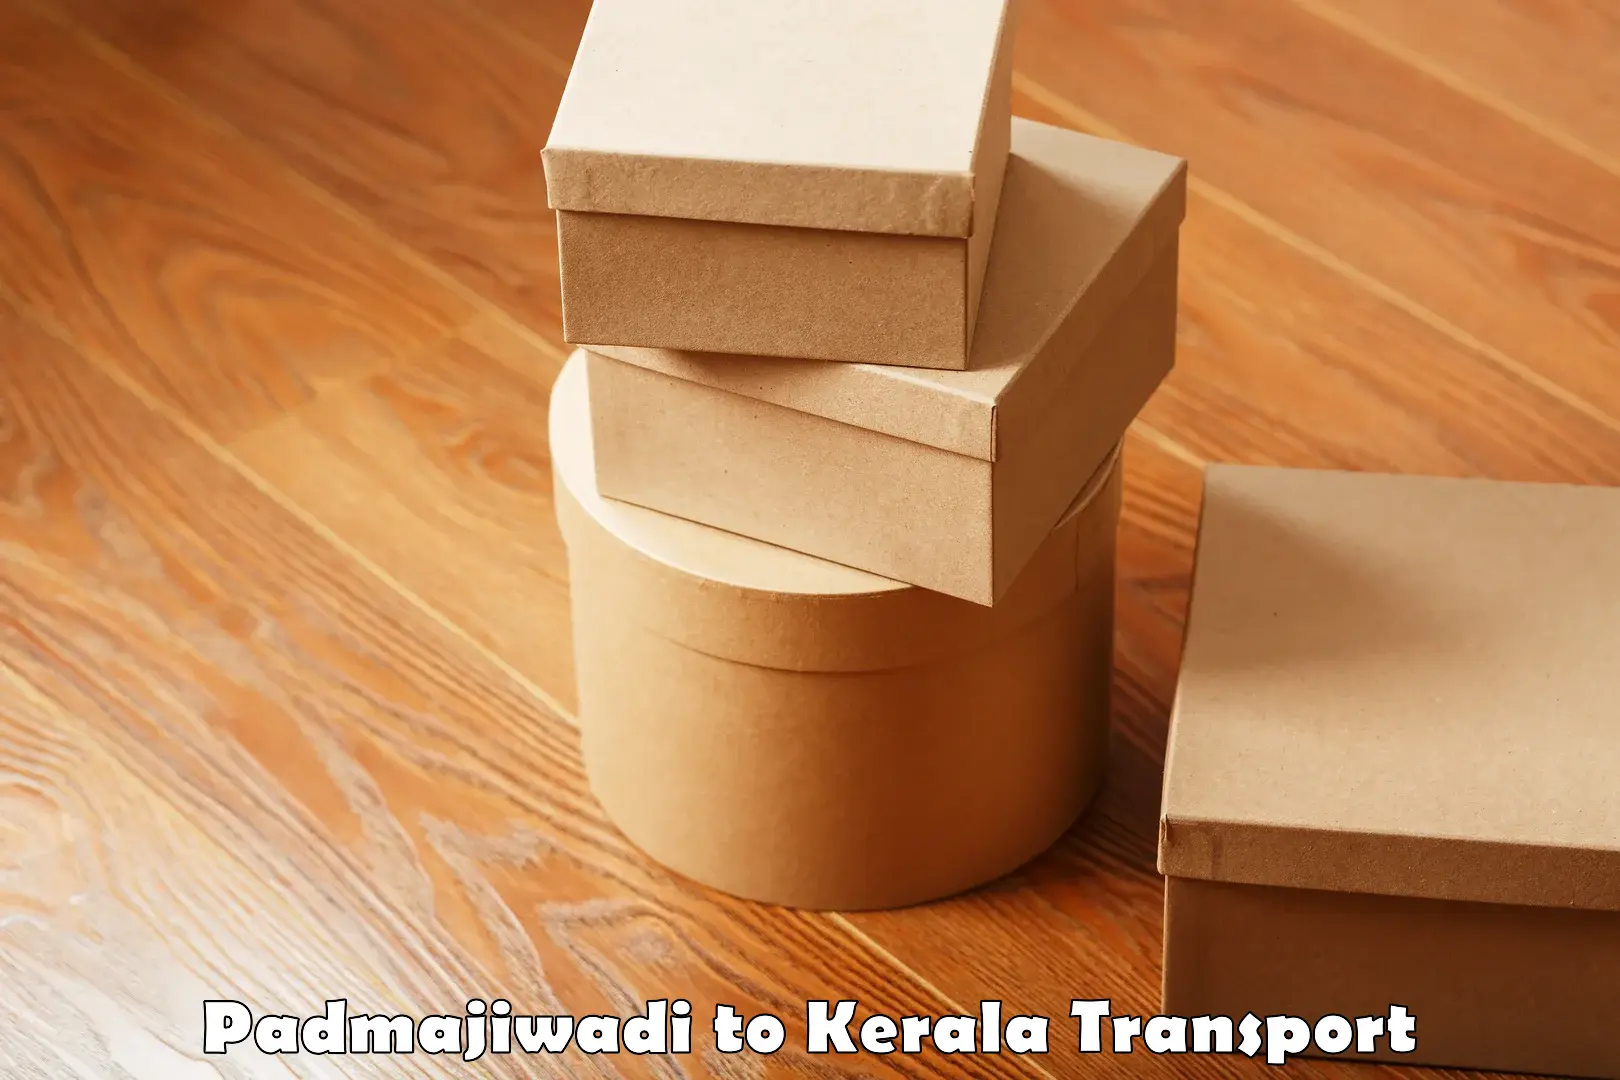 Daily transport service Padmajiwadi to Kayamkulam